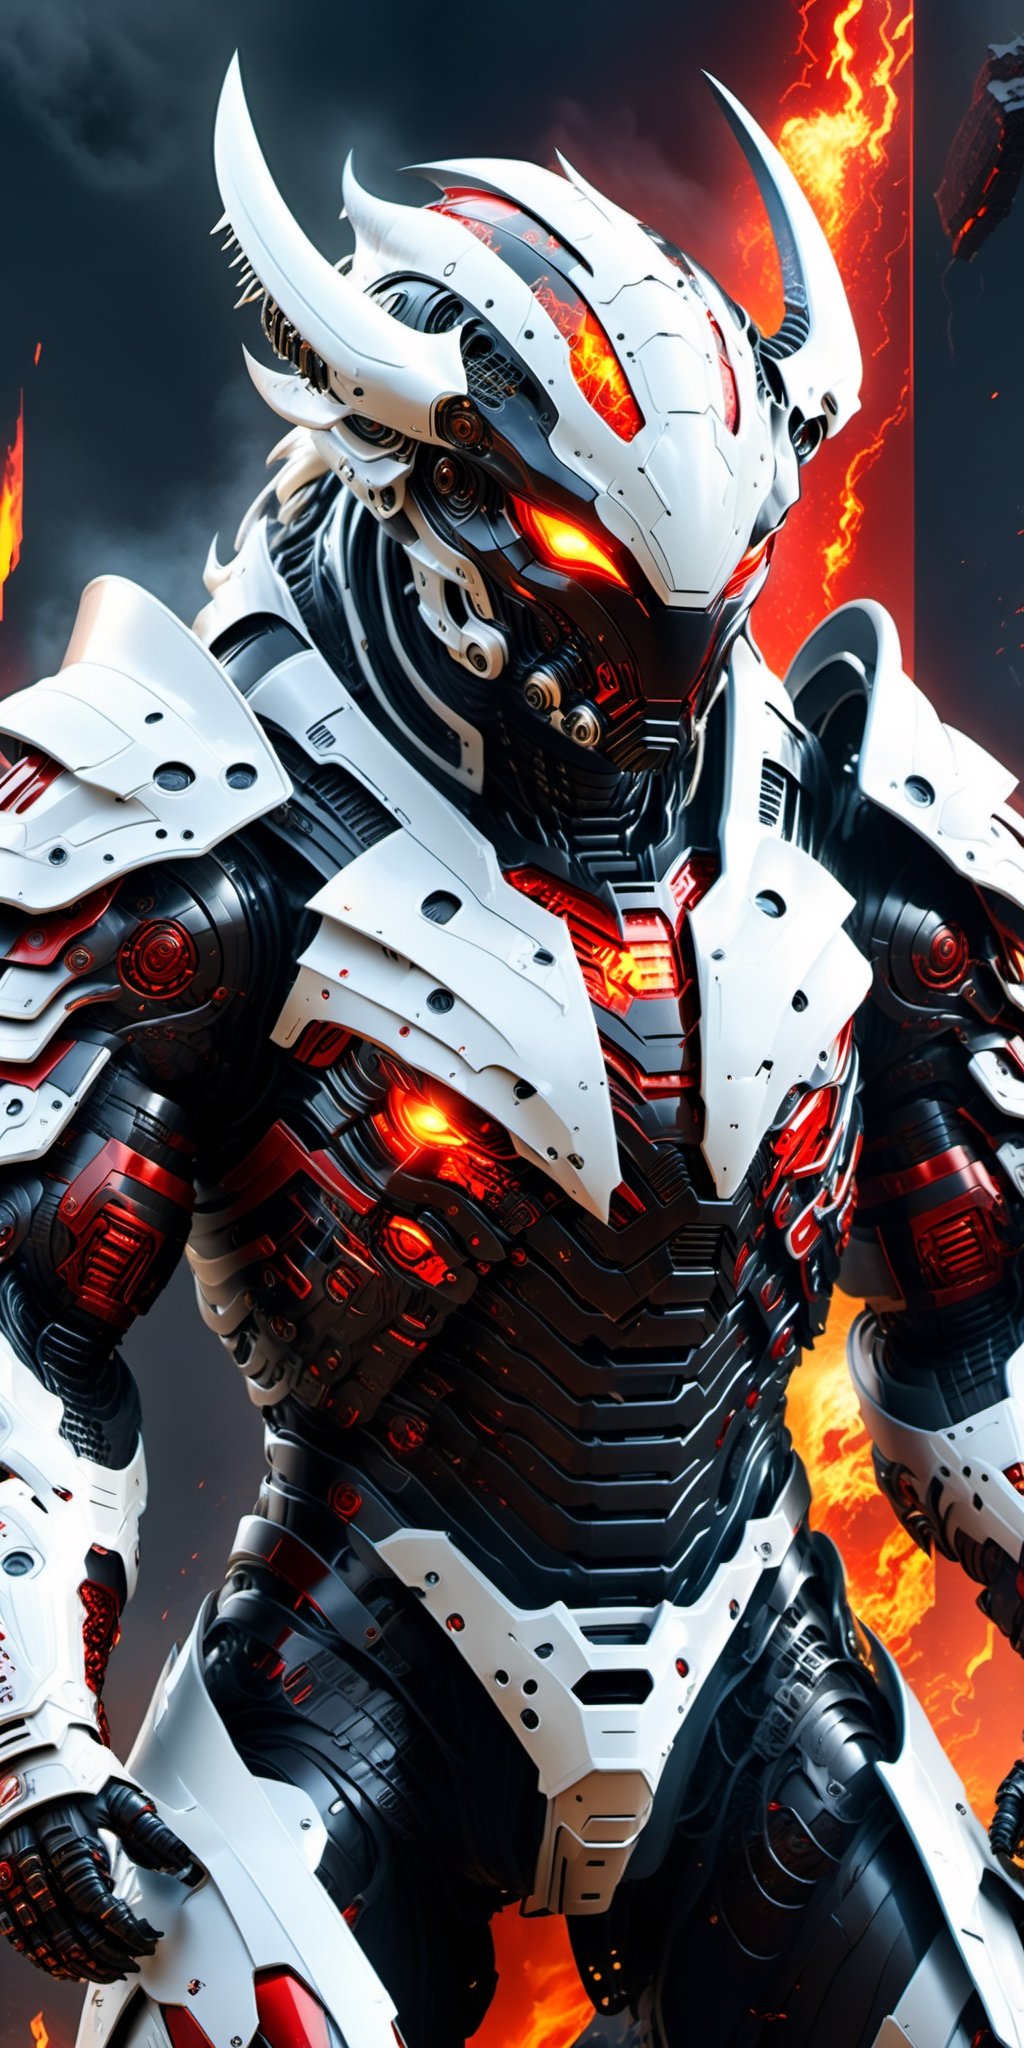 armor for men, alien technology, futuristic, high-tech suit